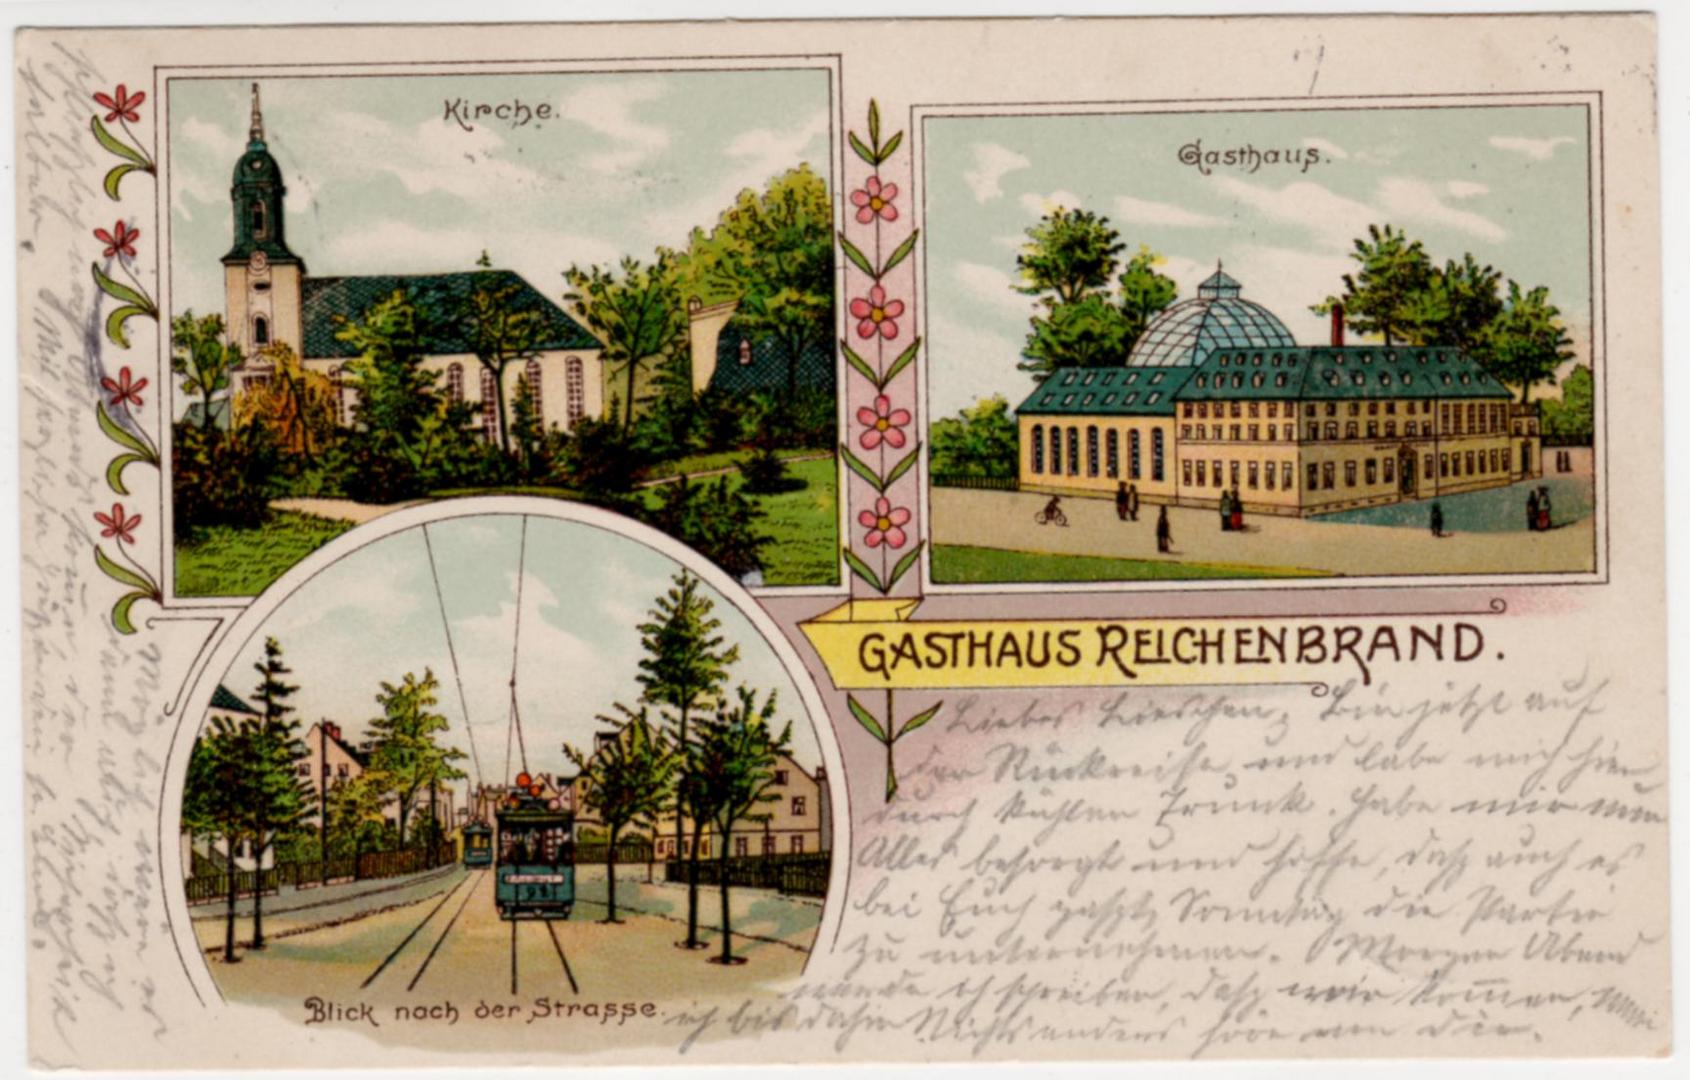 Gasthof Reichenbrand erbaut 1812